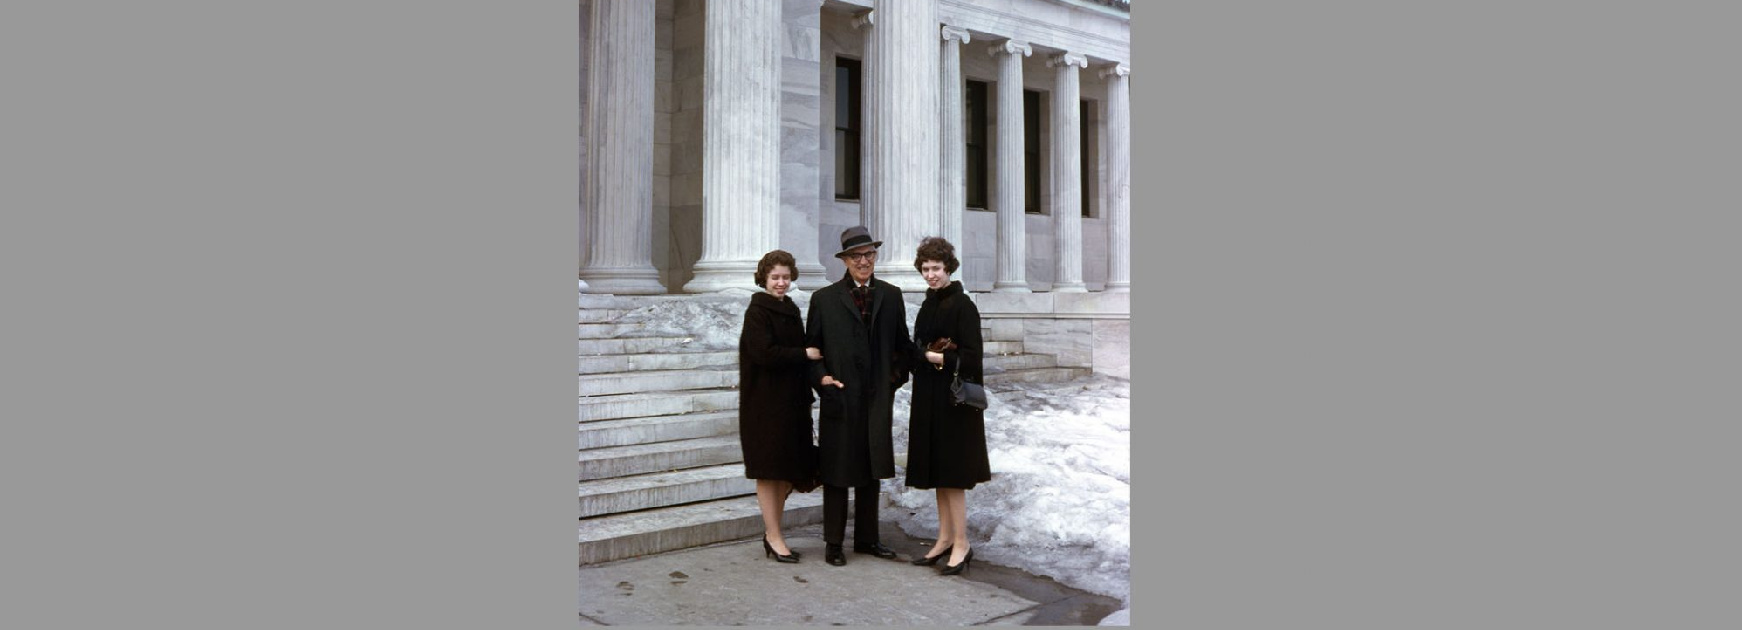 Sandra Still, Clyfford Still, and Diane Still at the Albright-Knox Art Gallery, Buffalo, New York, 1962.